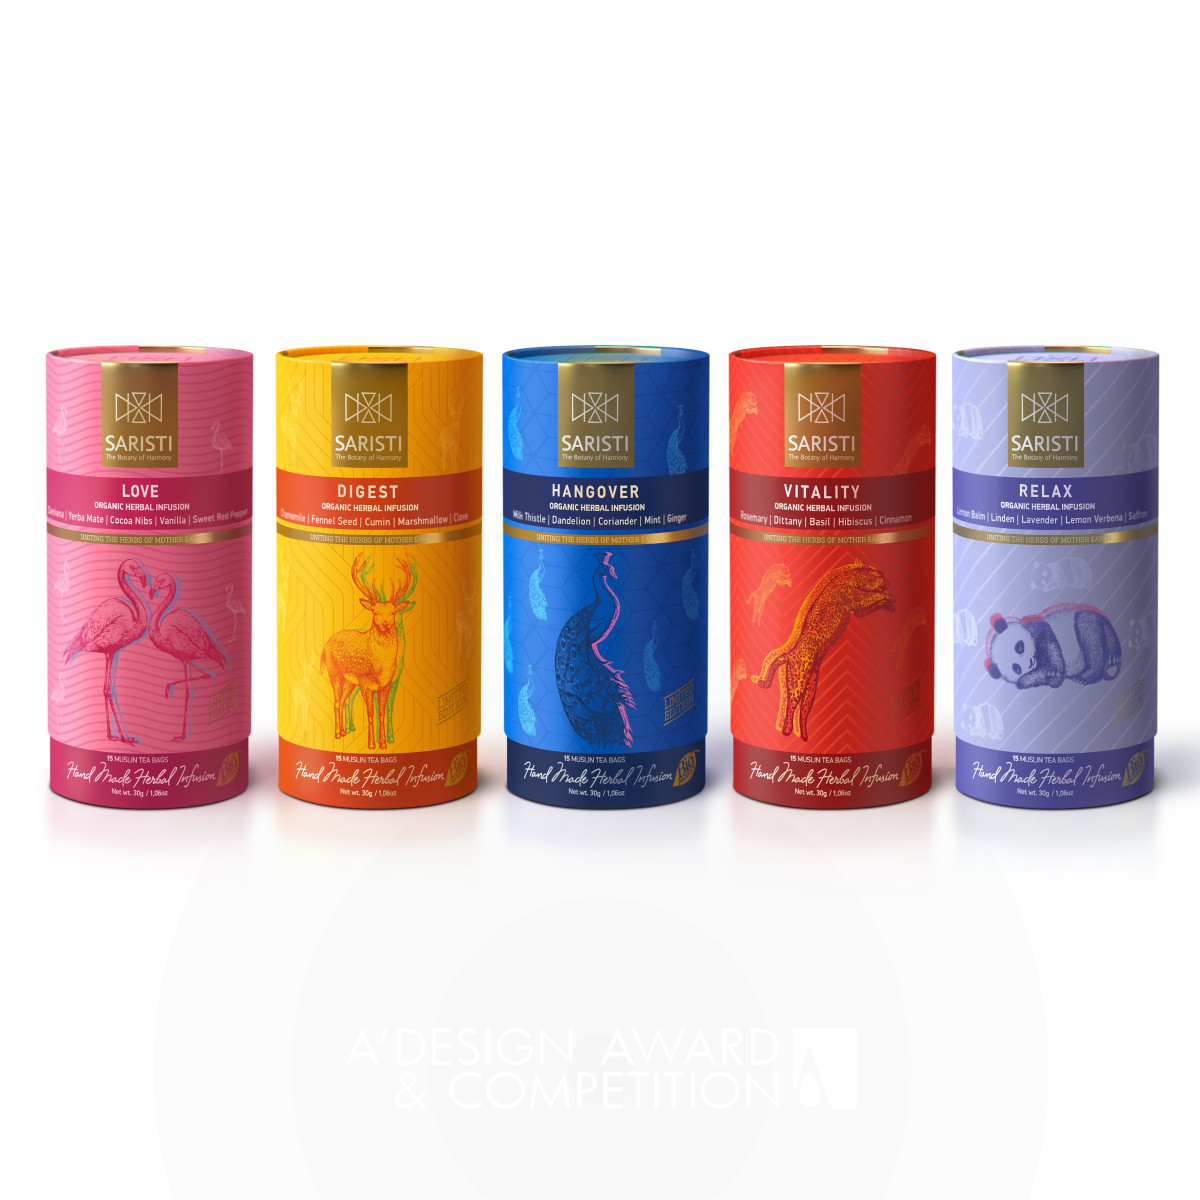 SARISTI Dry tea packaging by AS ADVERTISING Silver Packaging Design Award Winner 2018 